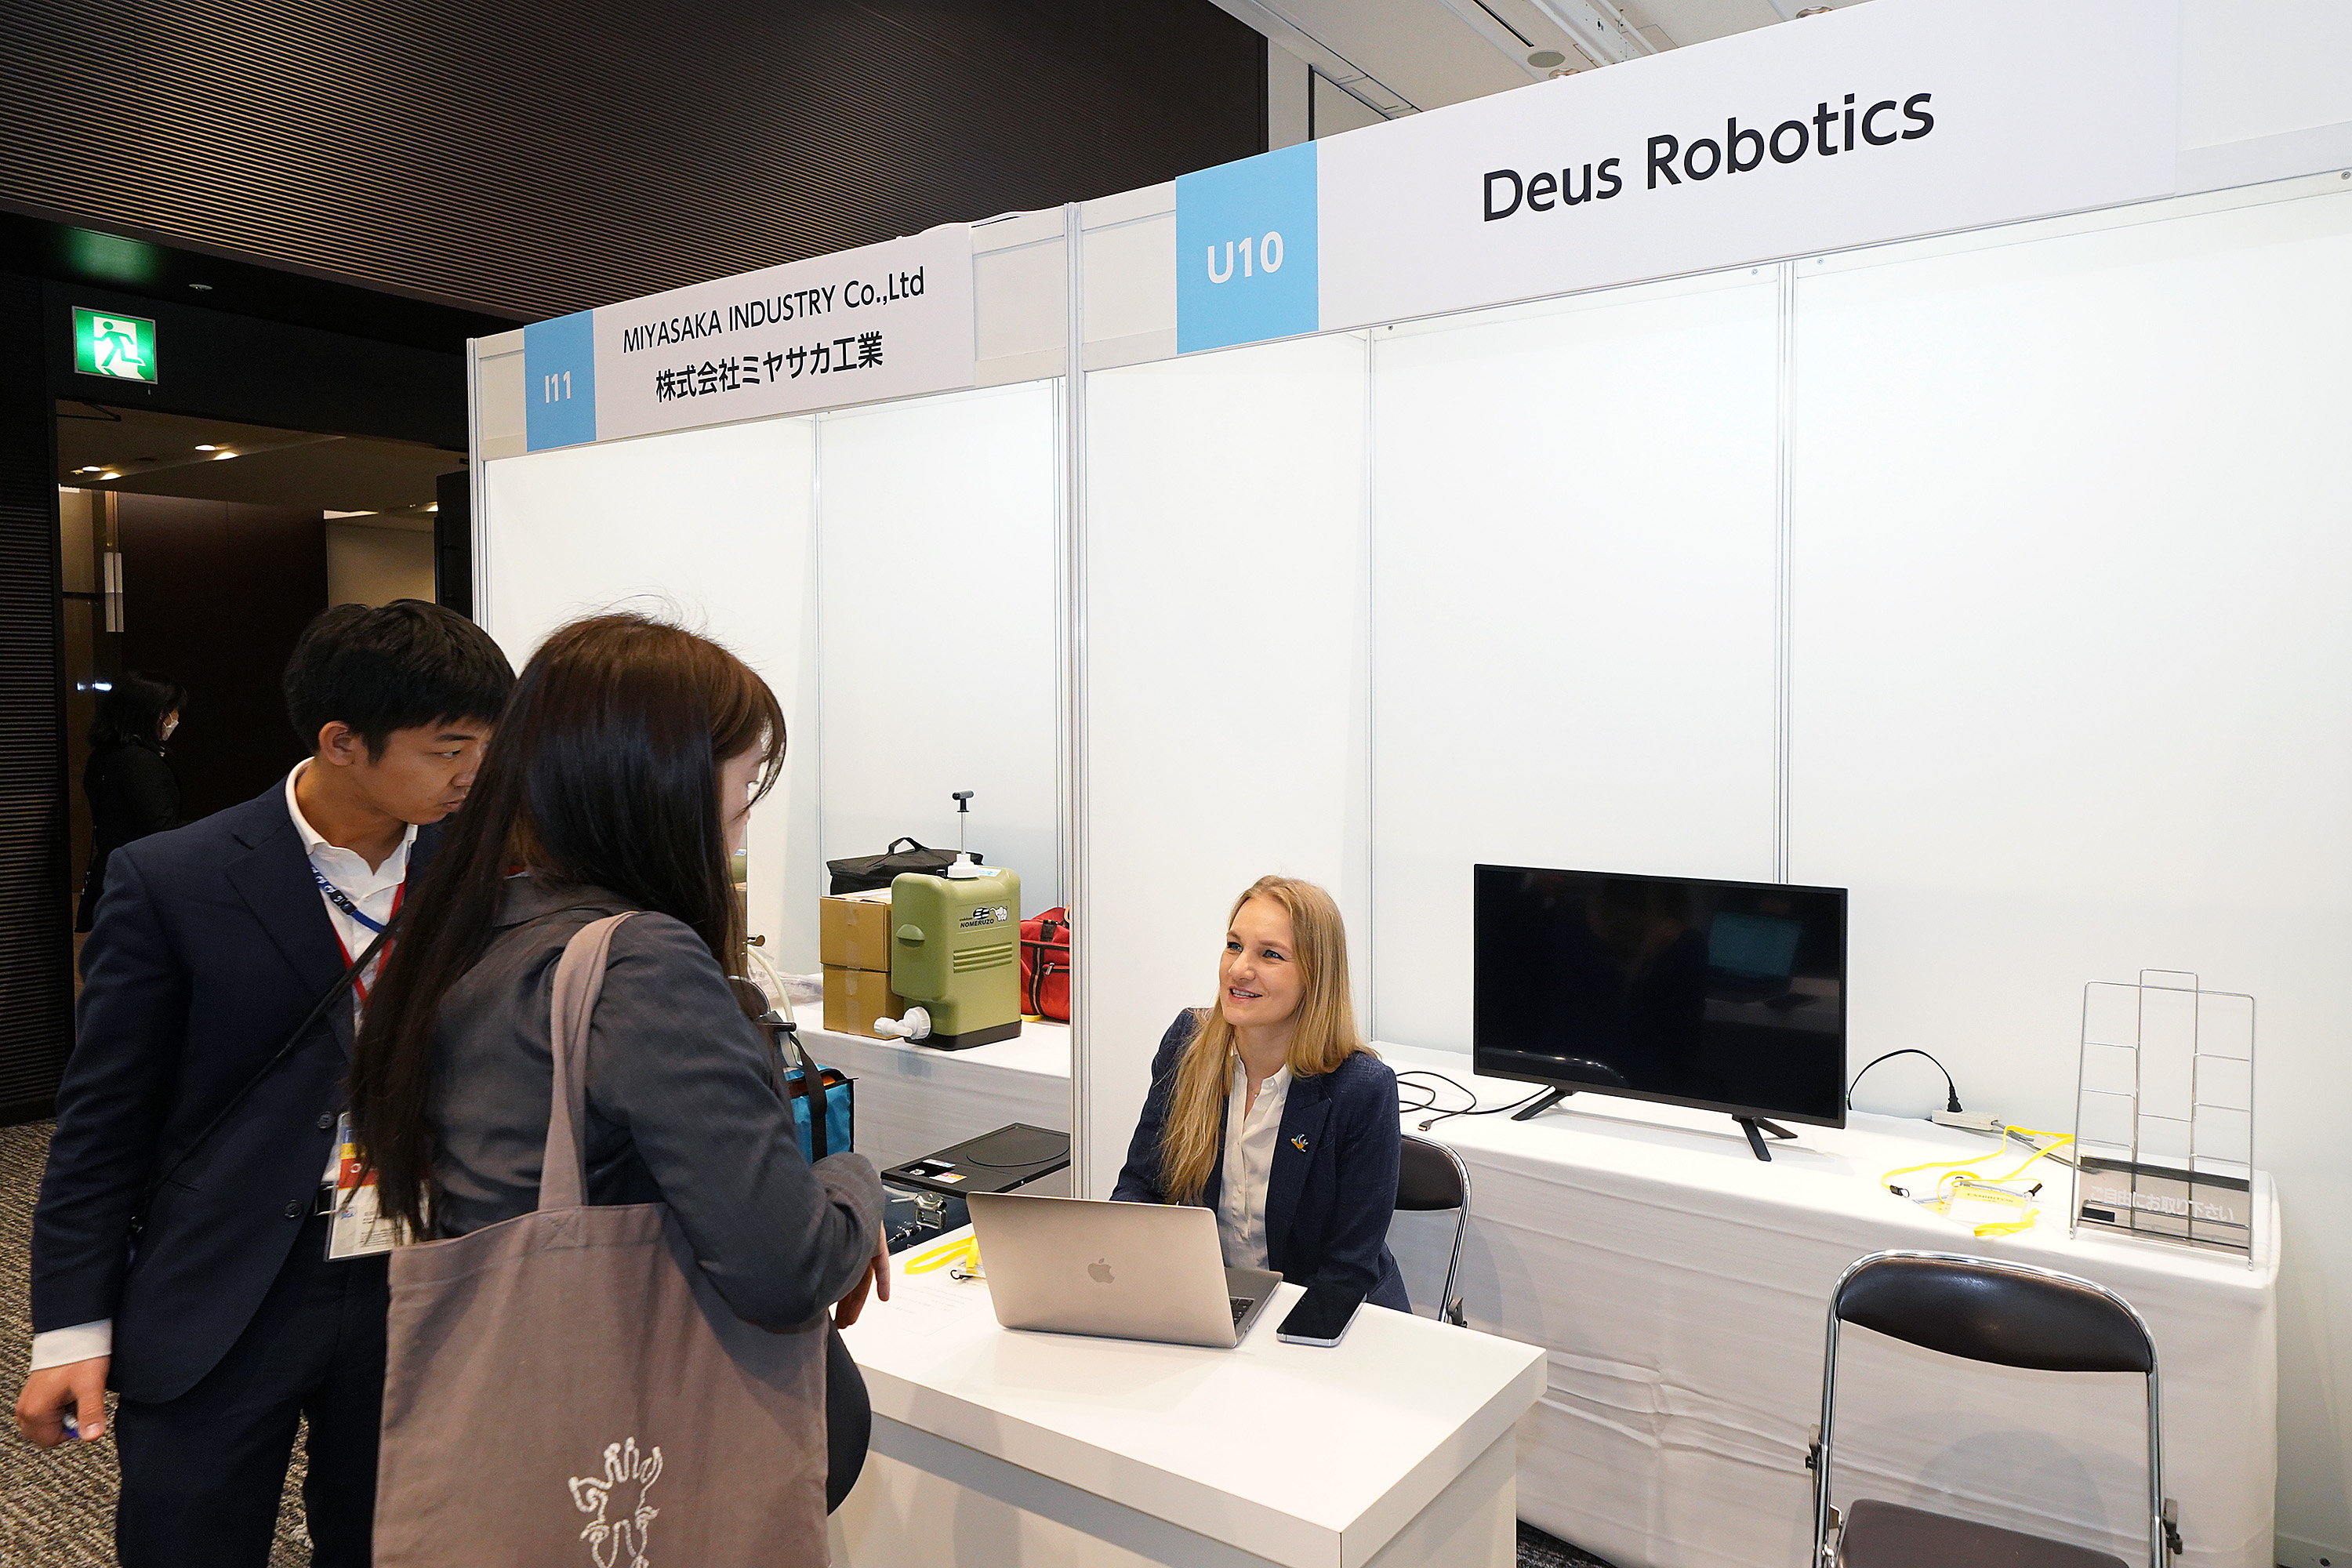 Deus Robotics (ウクライナ企業)